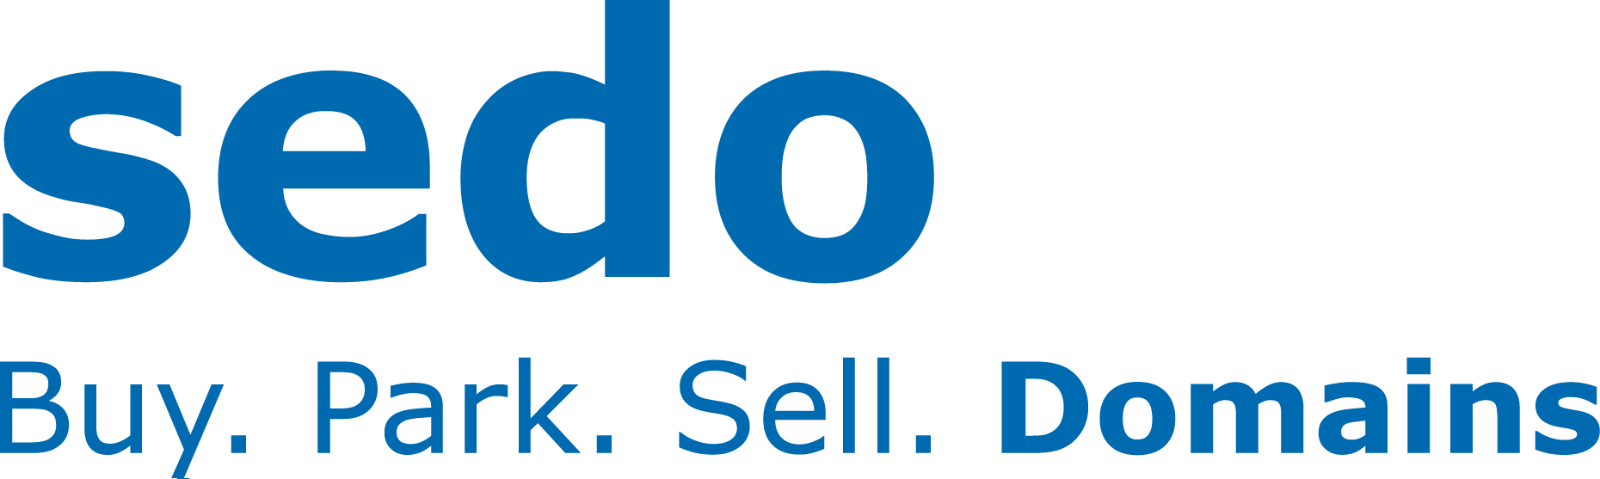 1600px-Sedo_logo.svg